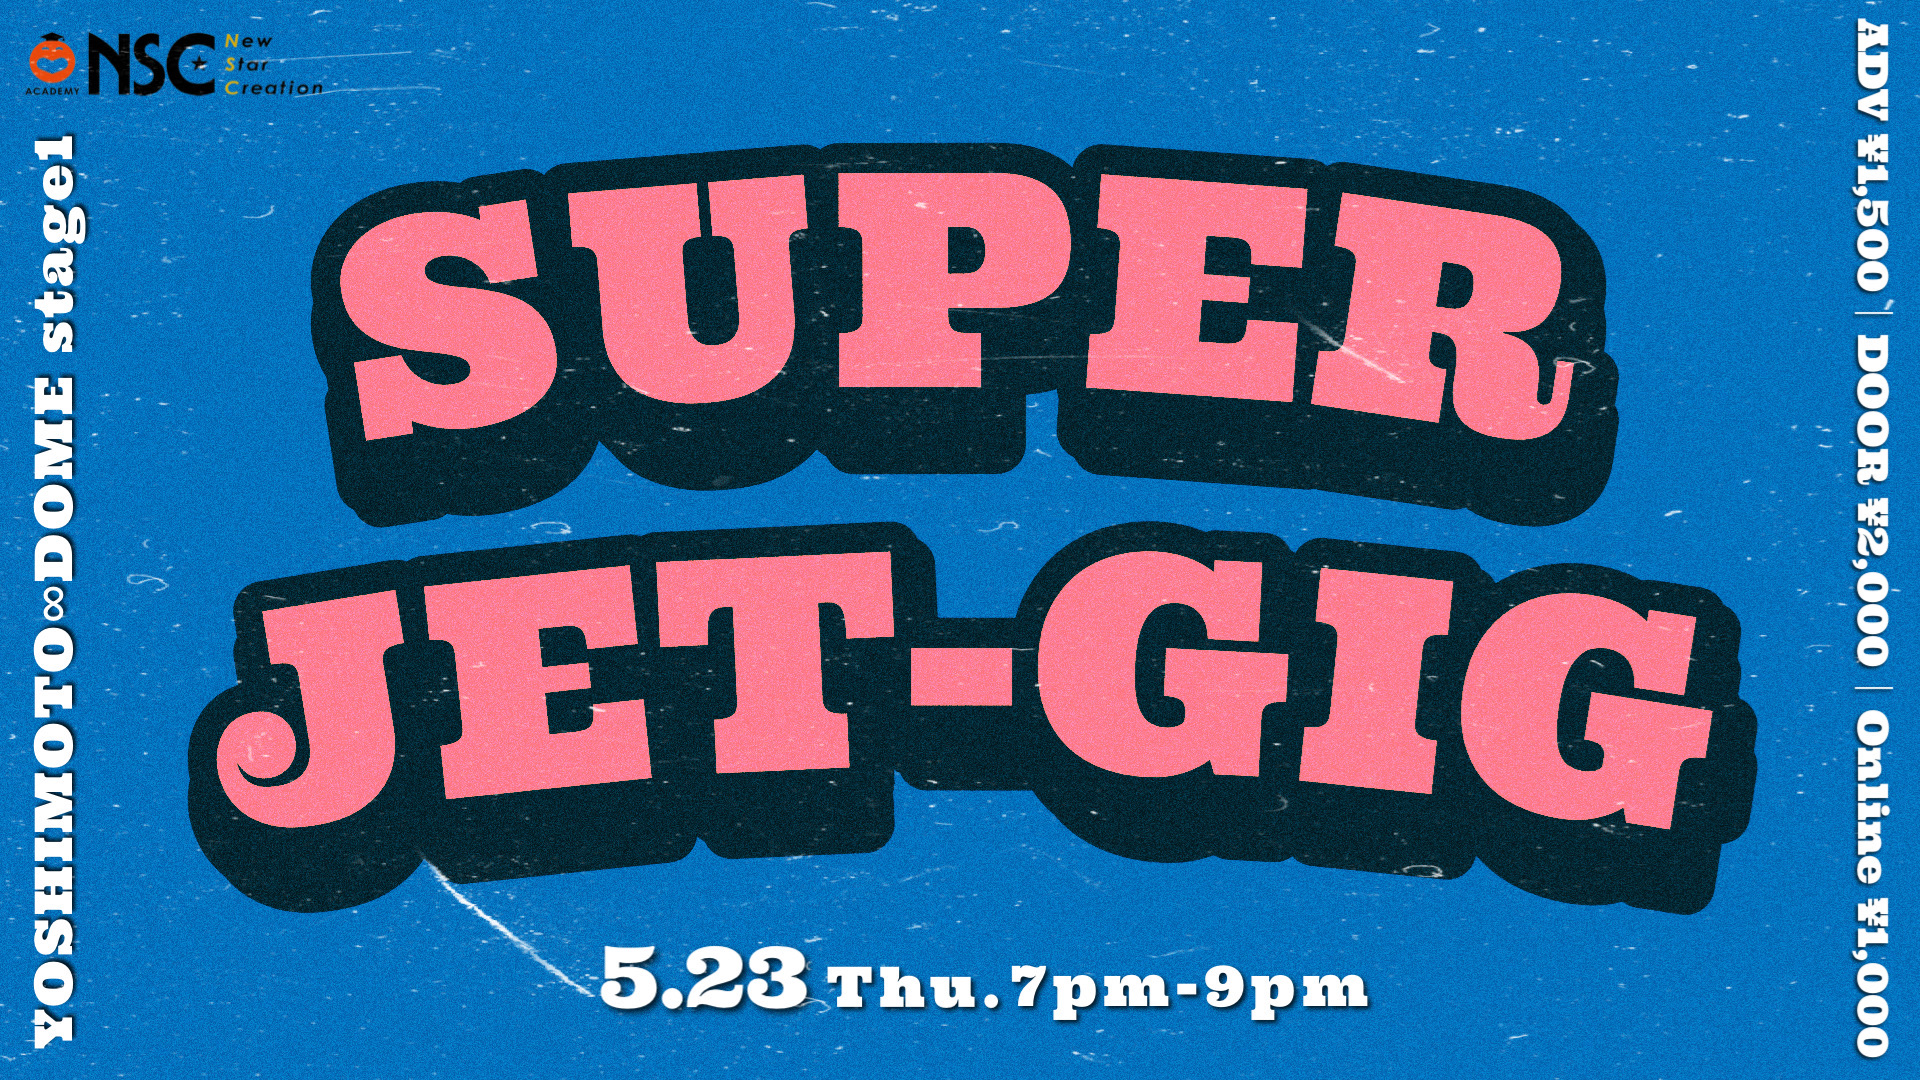 SUPER JET-GIG（5/23　19:00）